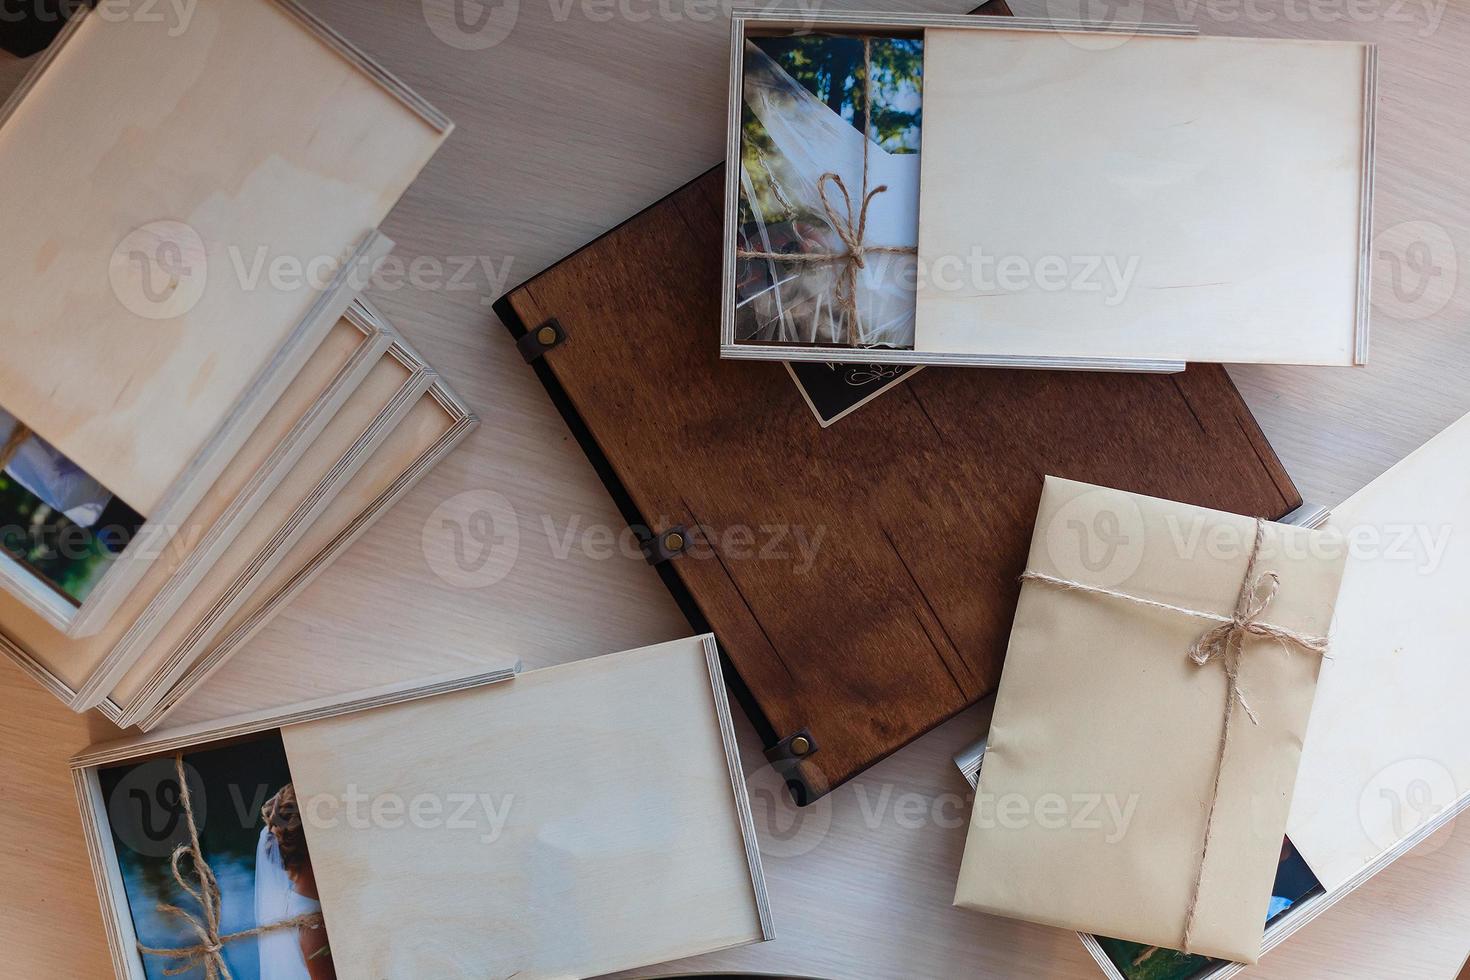 caixas de madeira vazias para presente ou fotos com stick usb, espaço livre. embalagem para drives de foto e usb em fundo branco de madeira. conceito de informação e correio